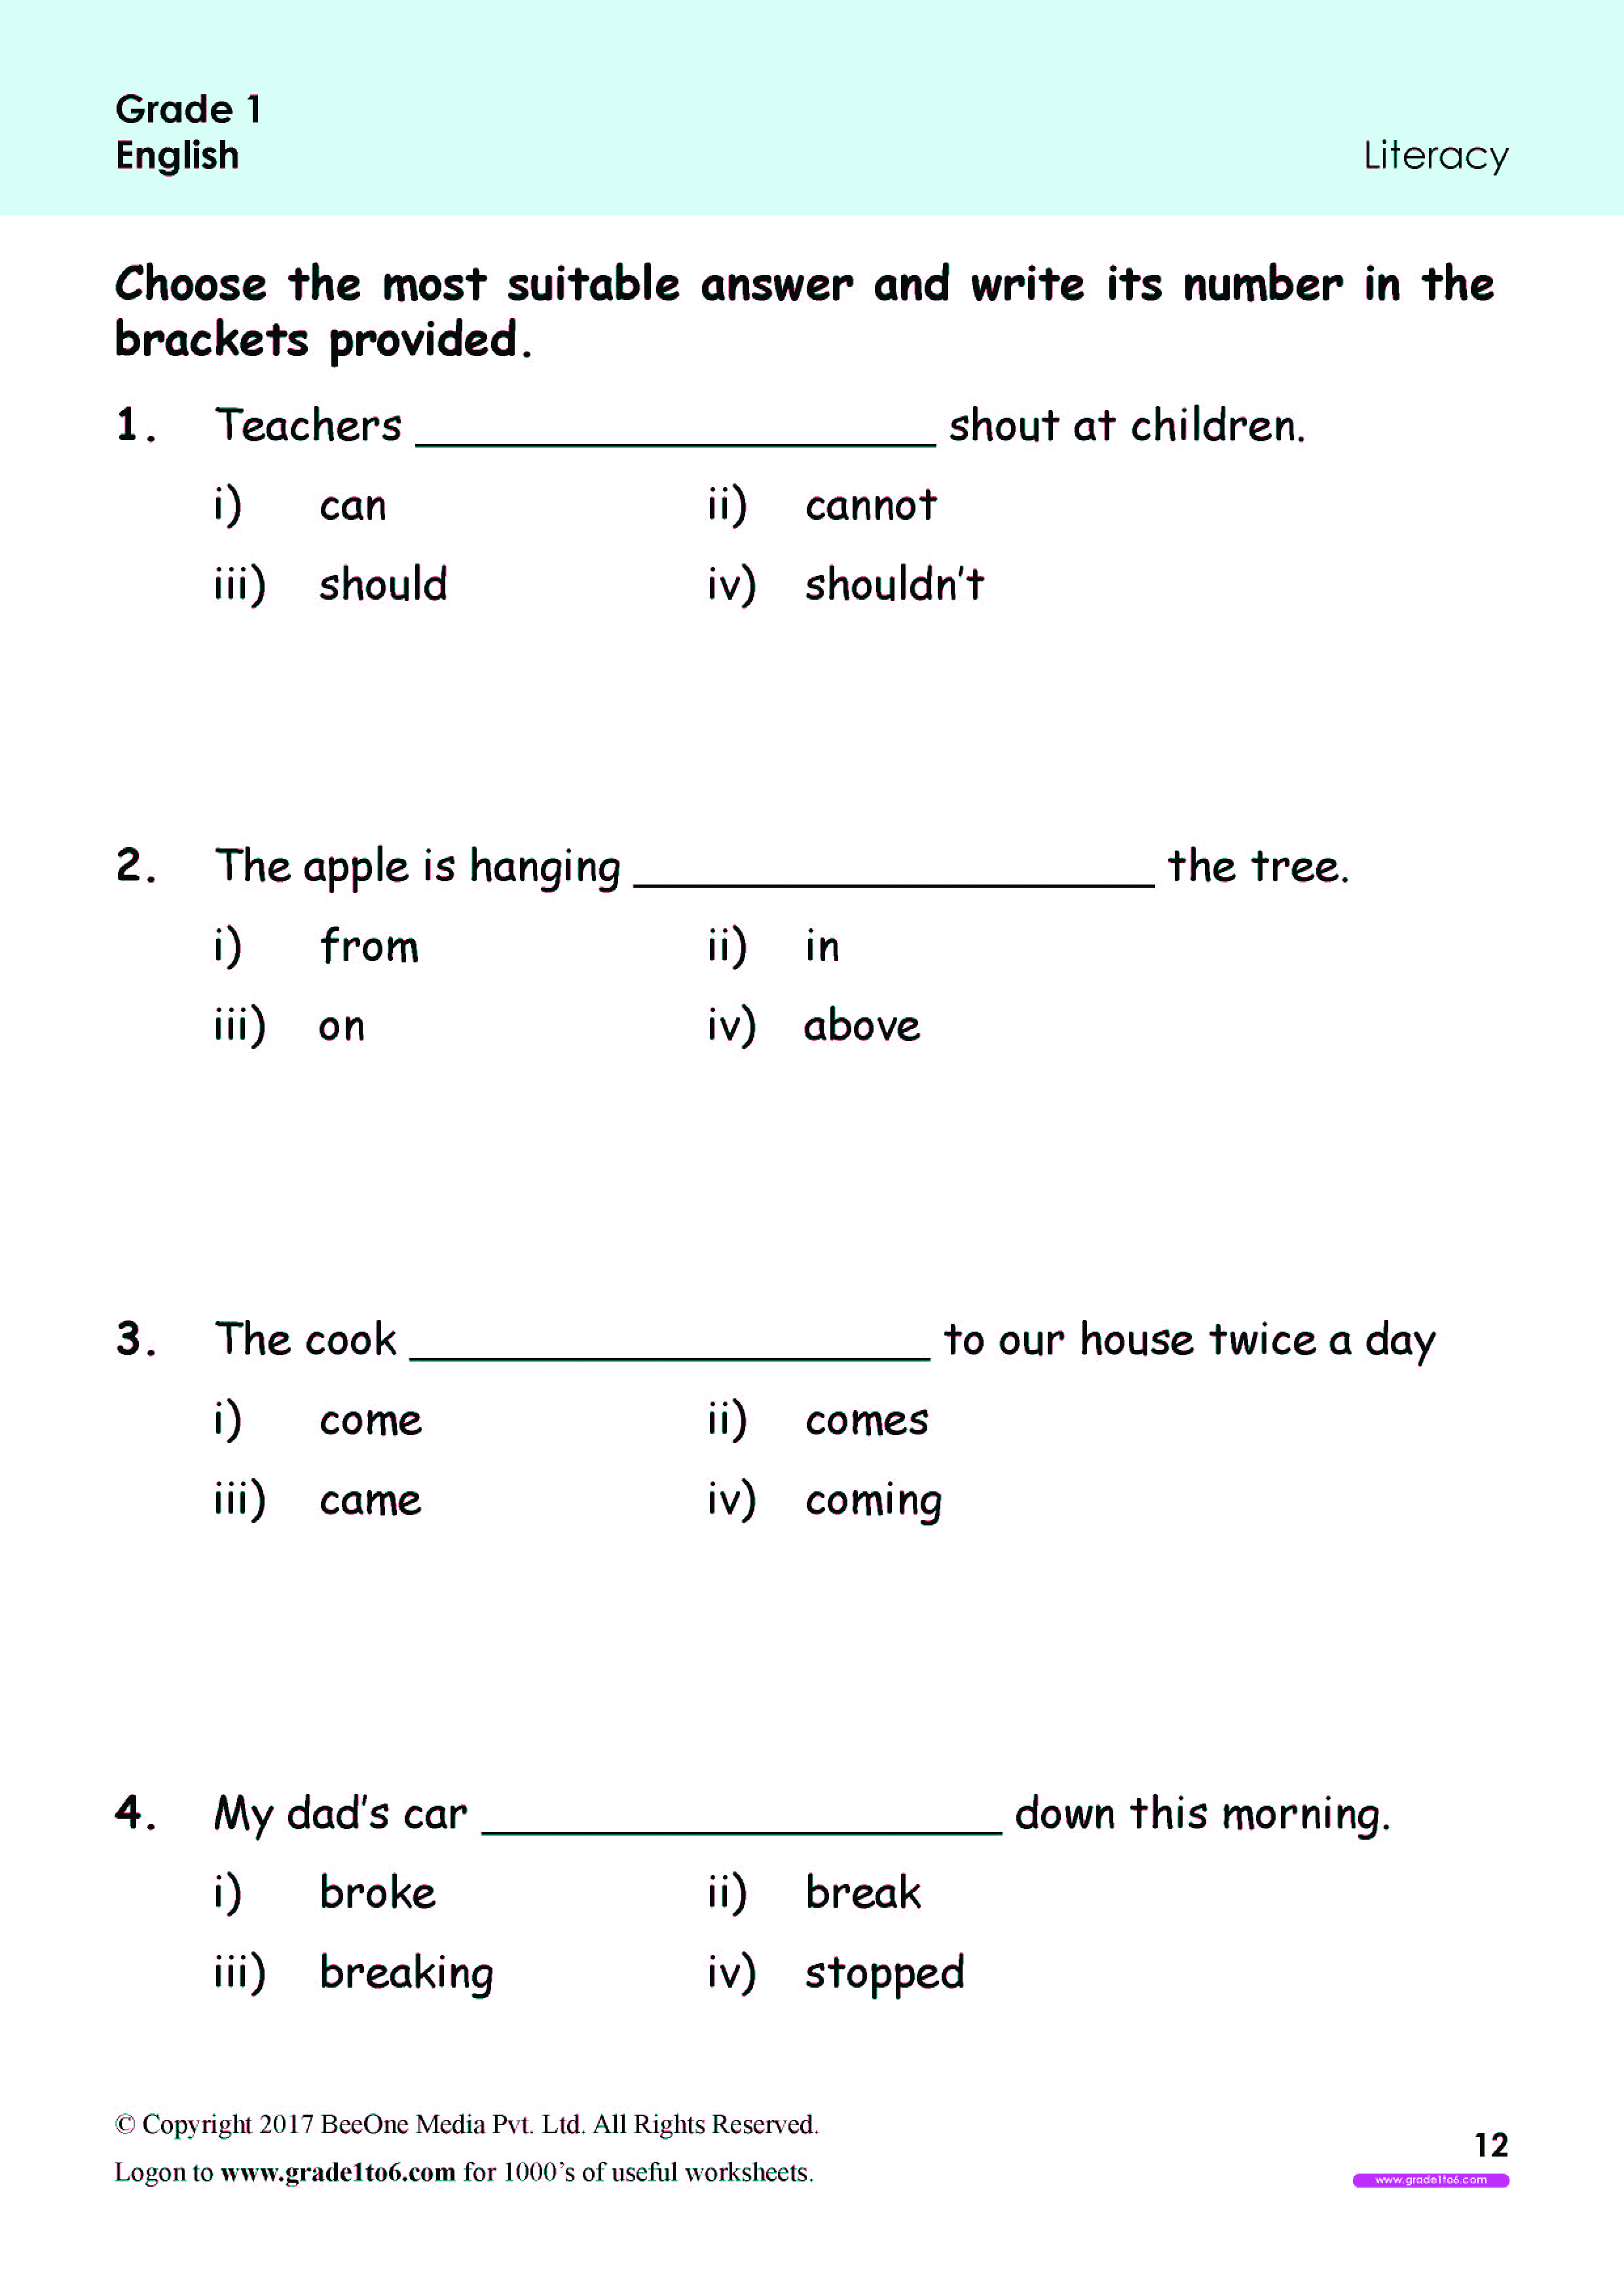 Grade 1 English Worksheets Typical Grade 1 English Worksheets Grade 1 English Awesome Animals